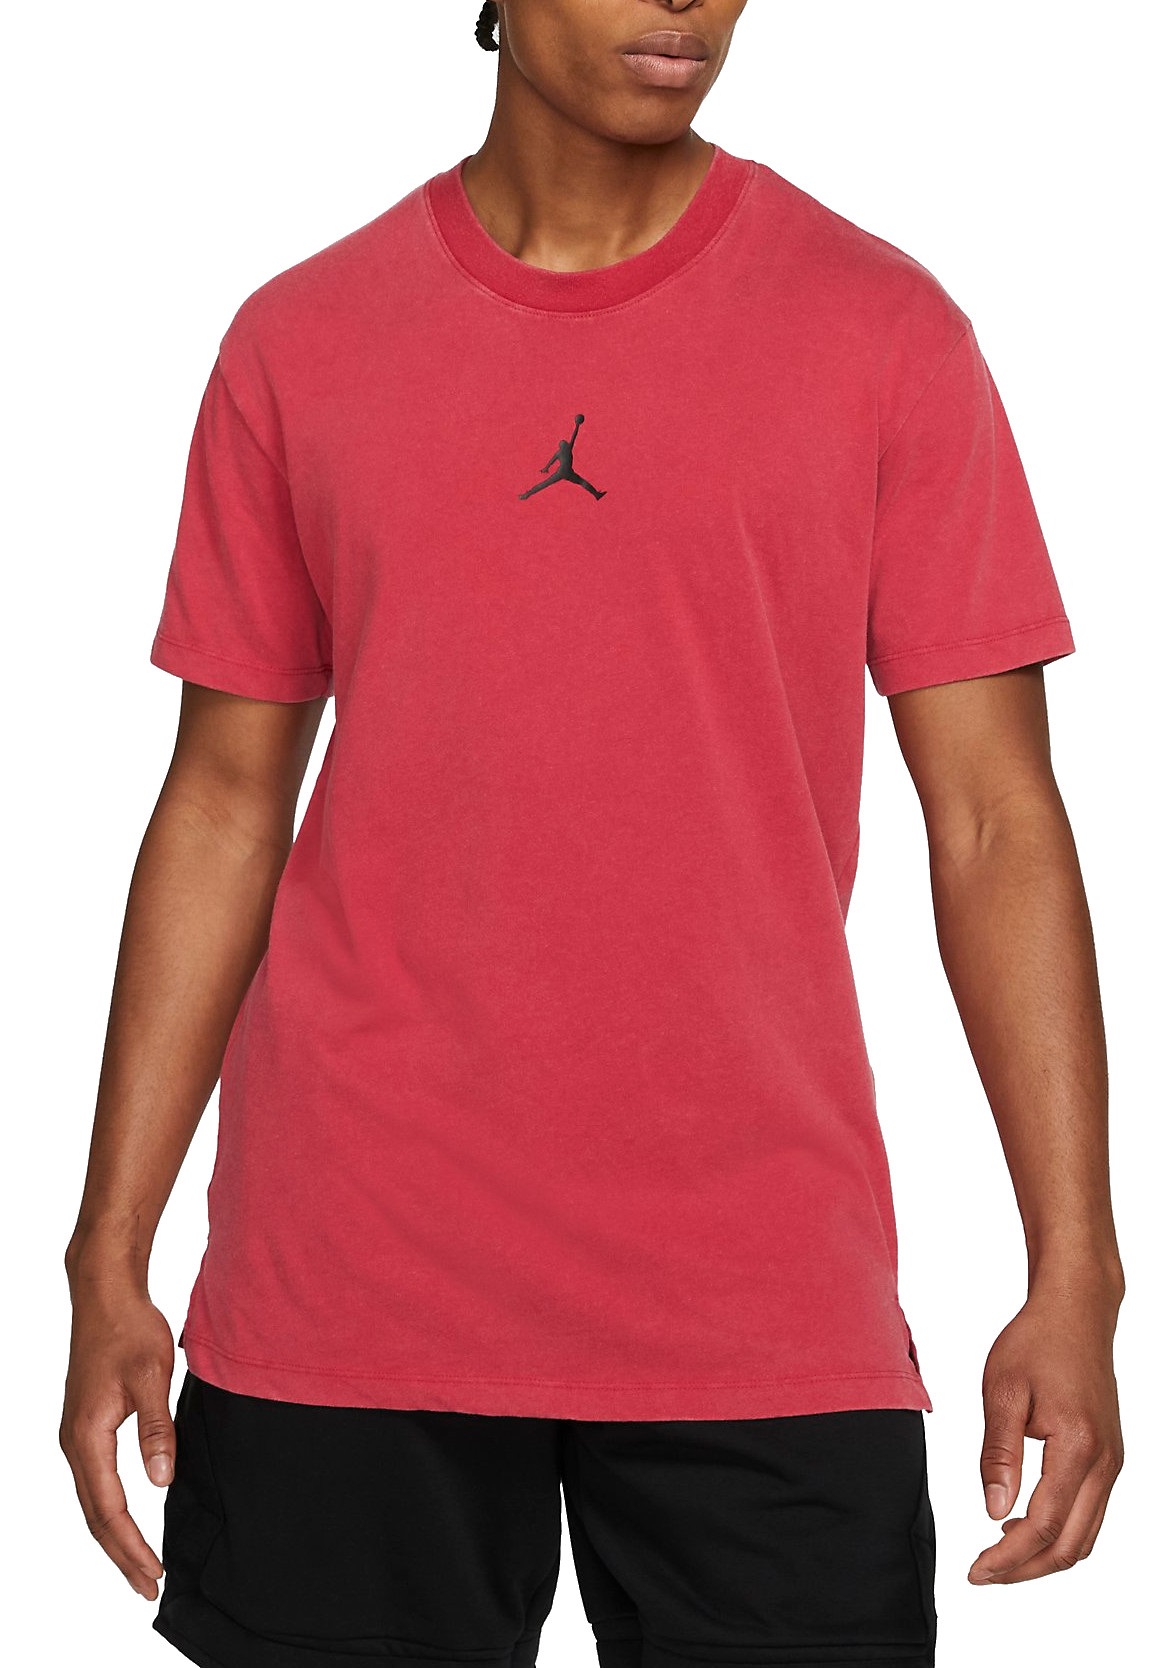 T-shirt comprida Jordan Dri-FIT Air Men s Short-Sleeve Graphic Top